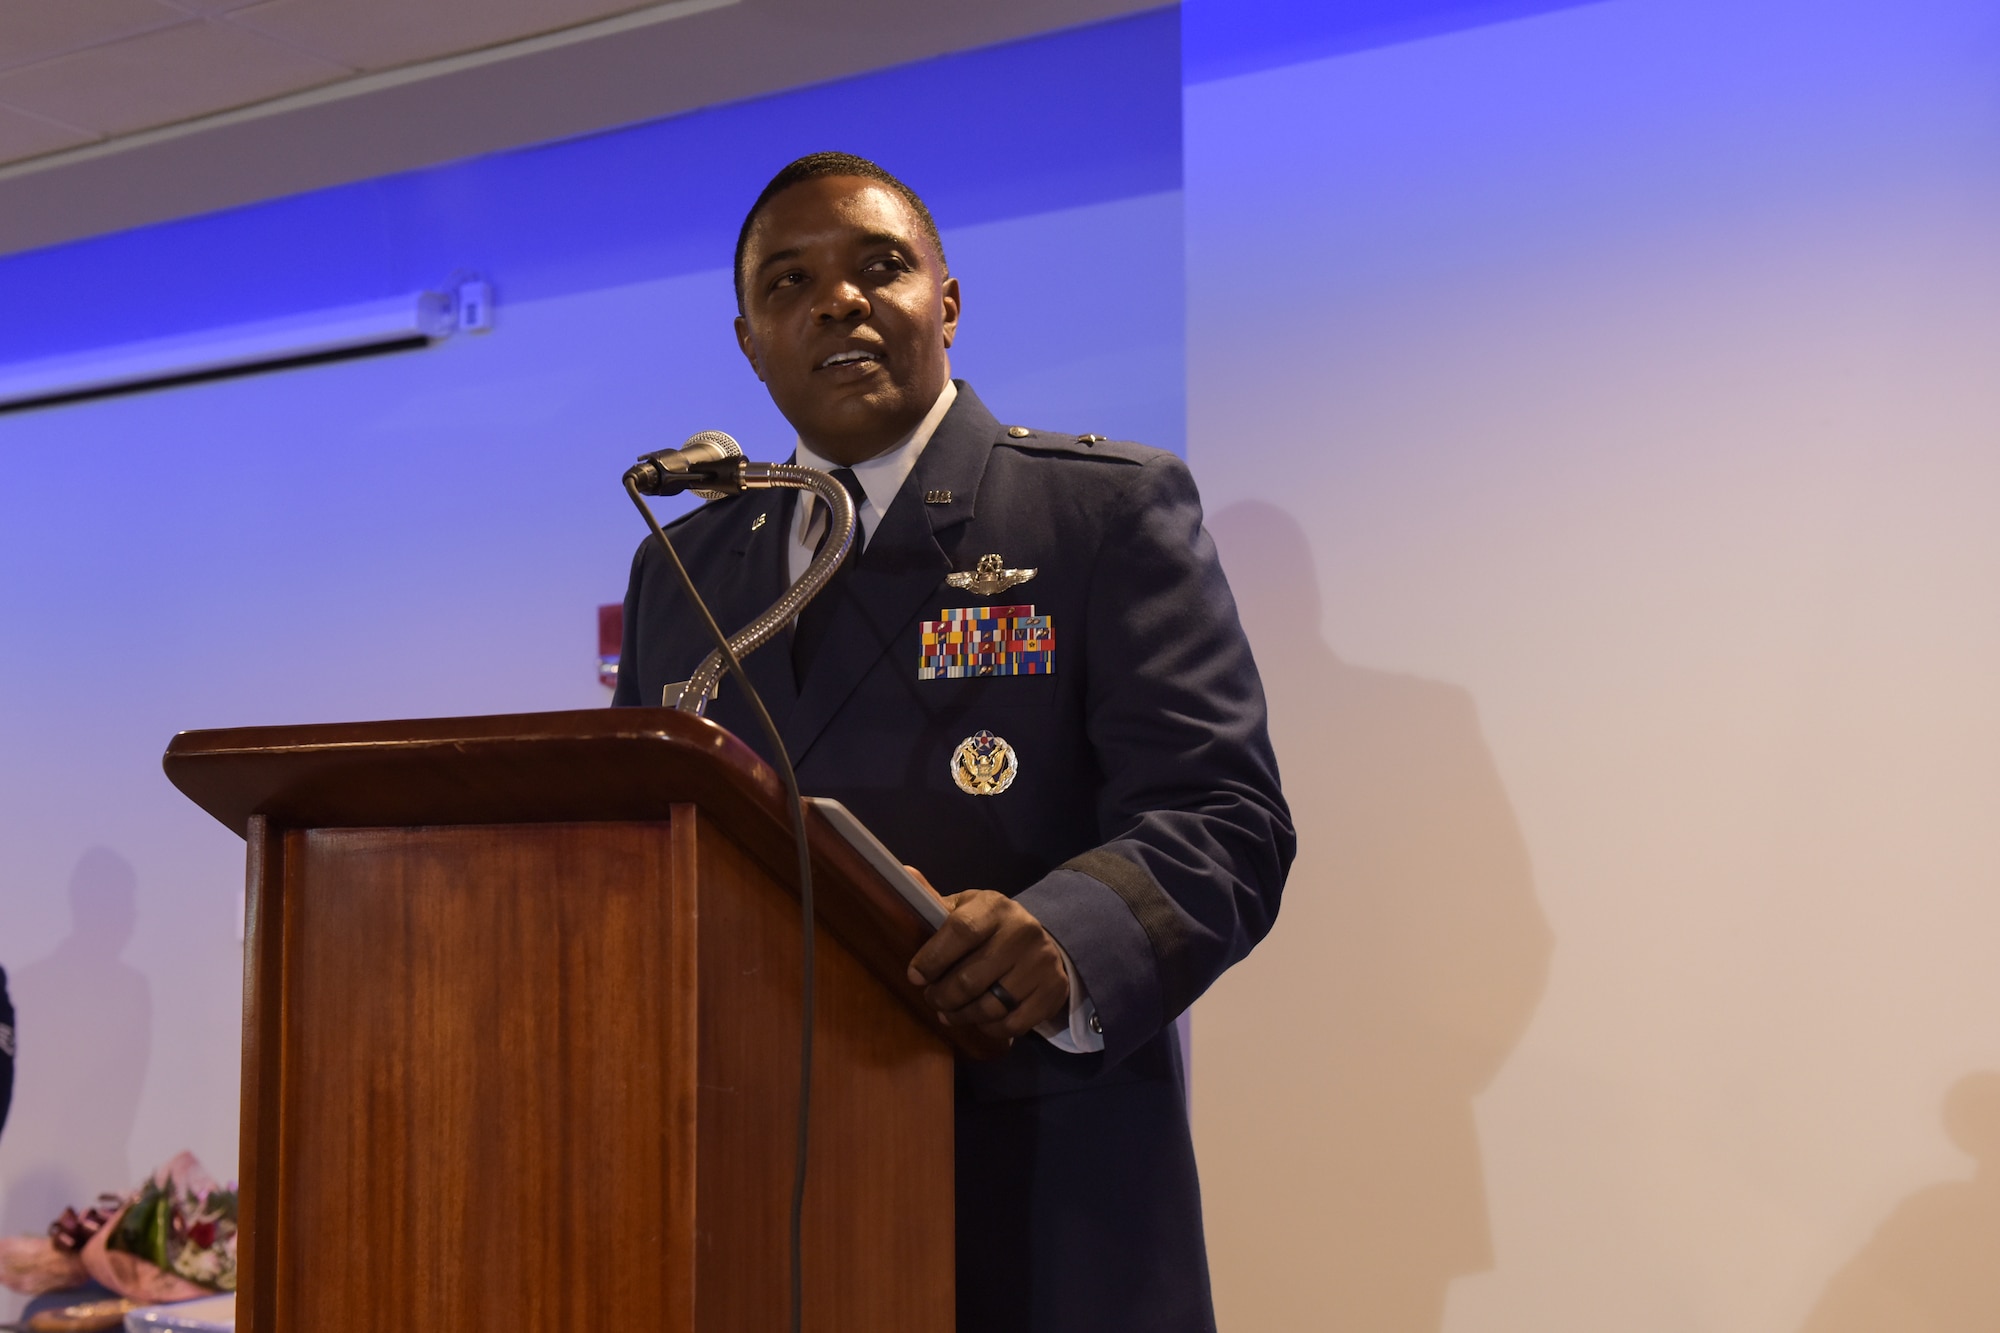 Gen. Jones gives a speech at a podium